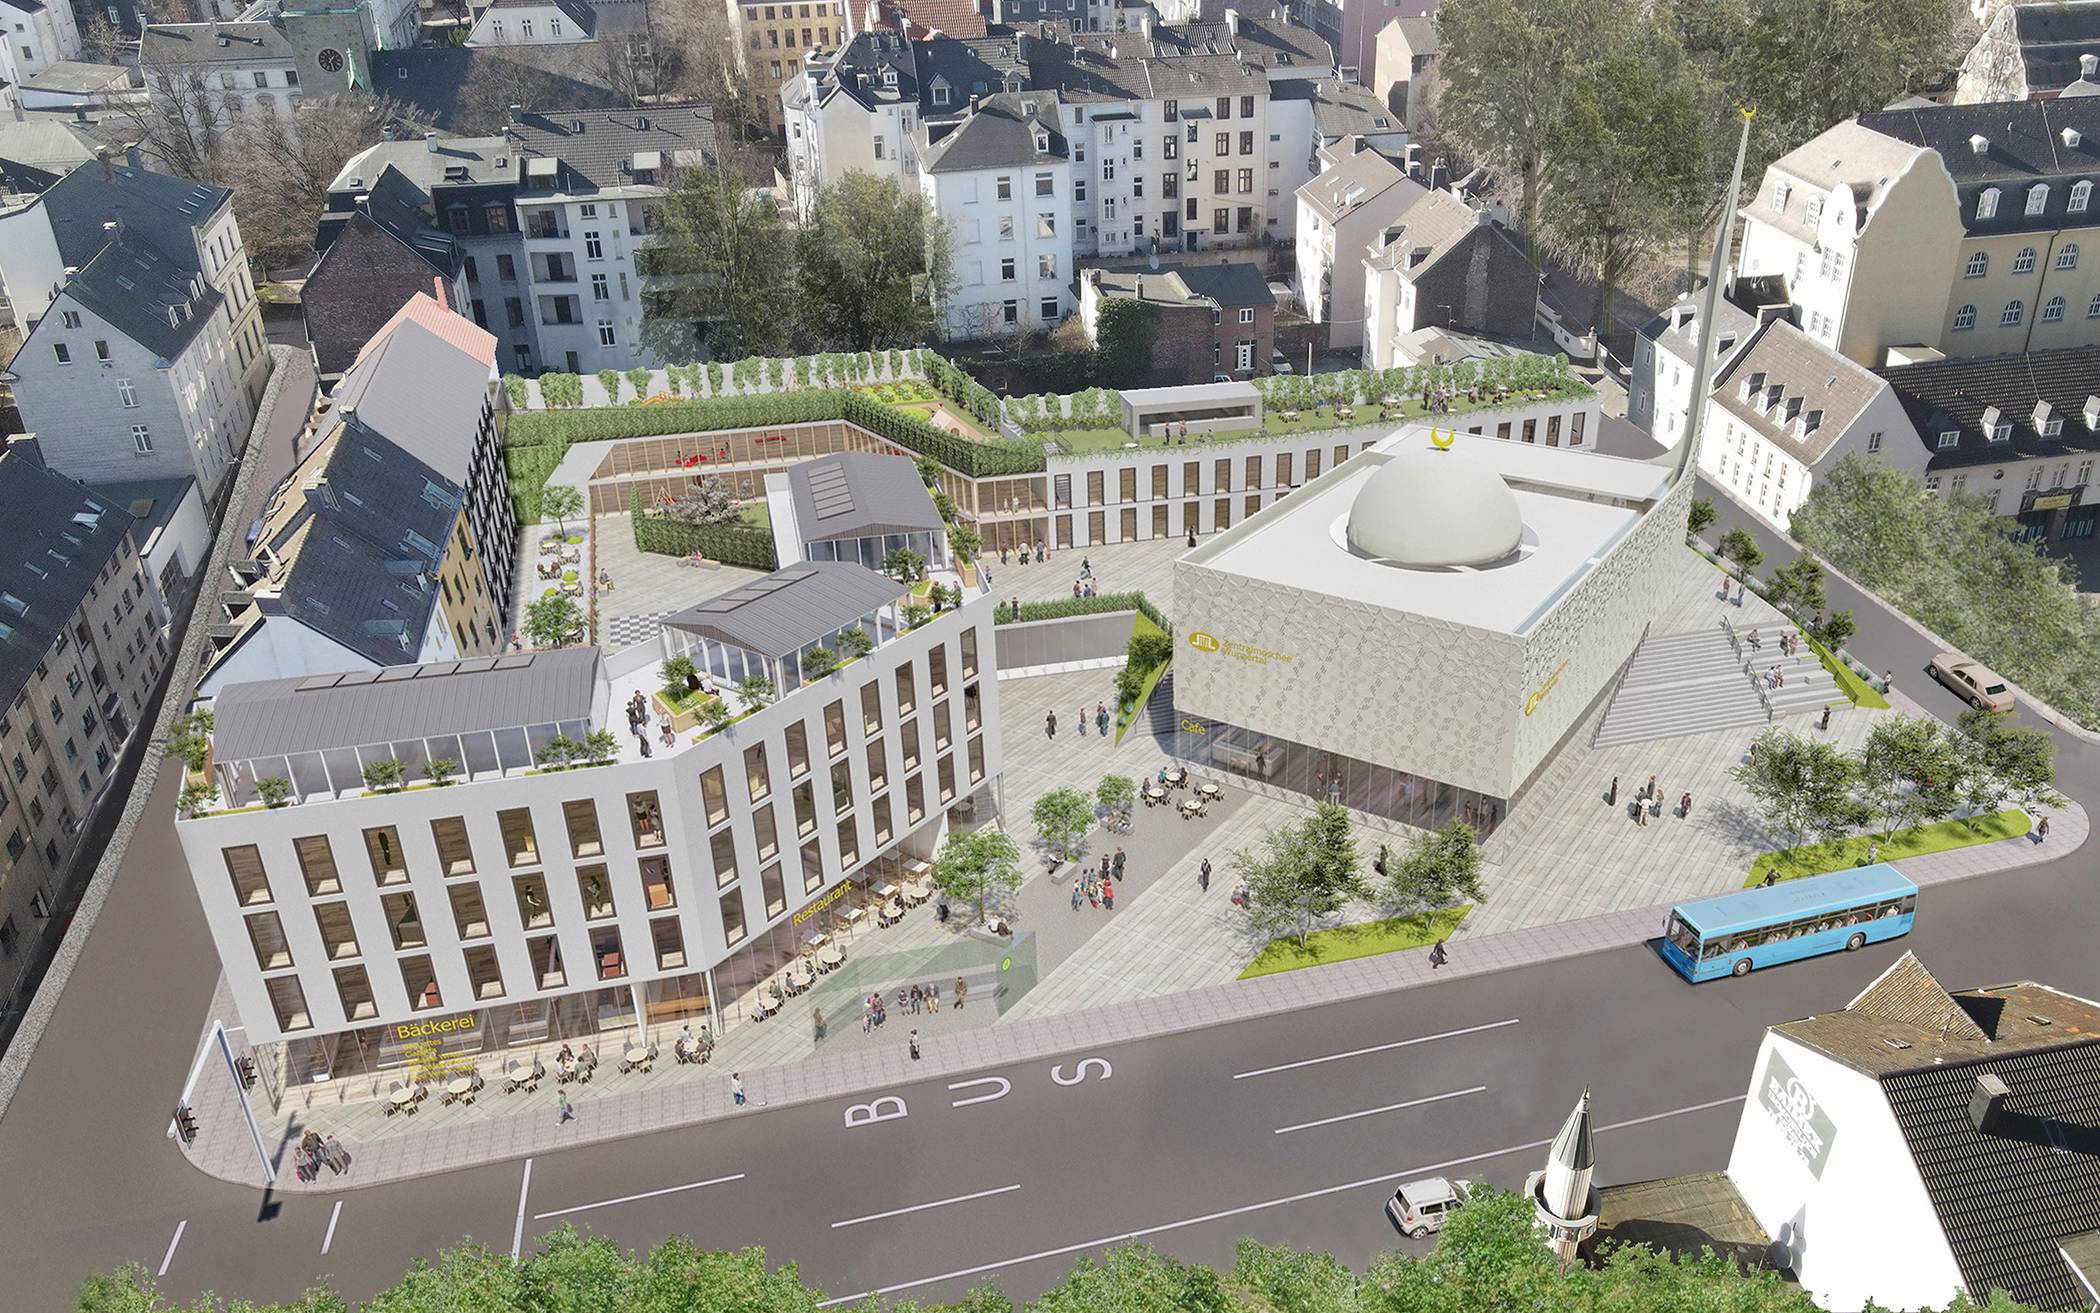  Visualisierung des an der Gathe geplanten Moschee-Areals der DITIB-Gemeinde Wuppertal. 